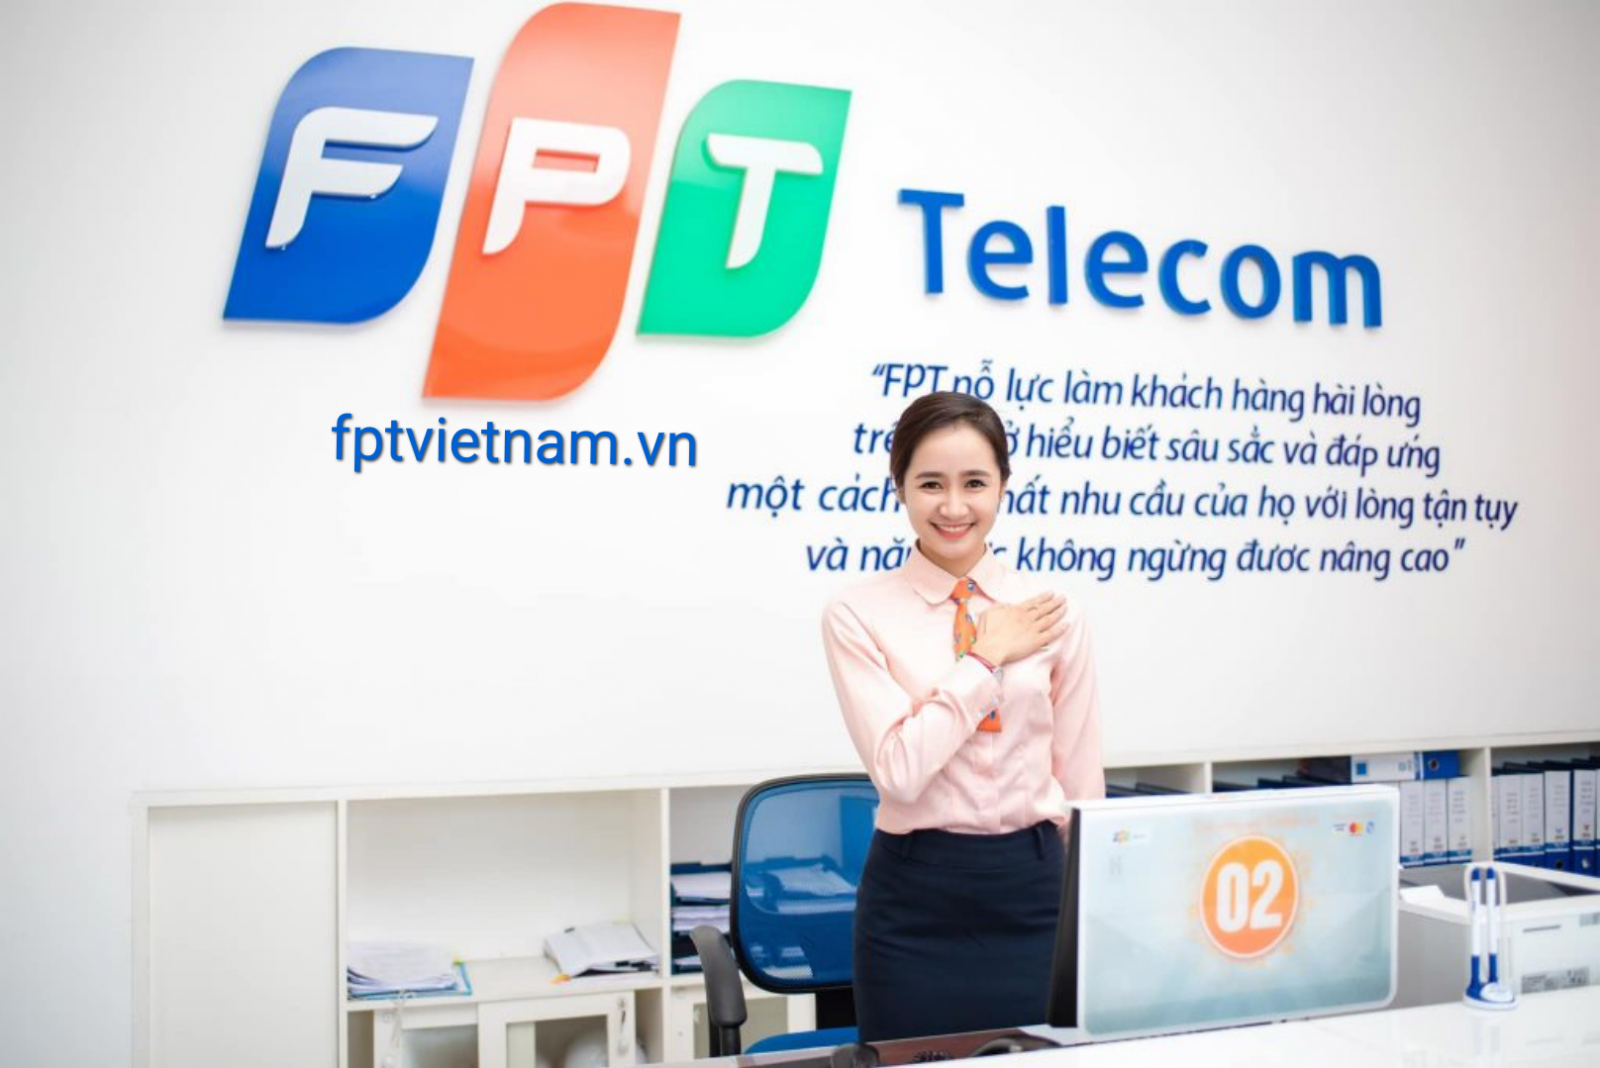 dịch vụ fpt telecom Lạng Sơn